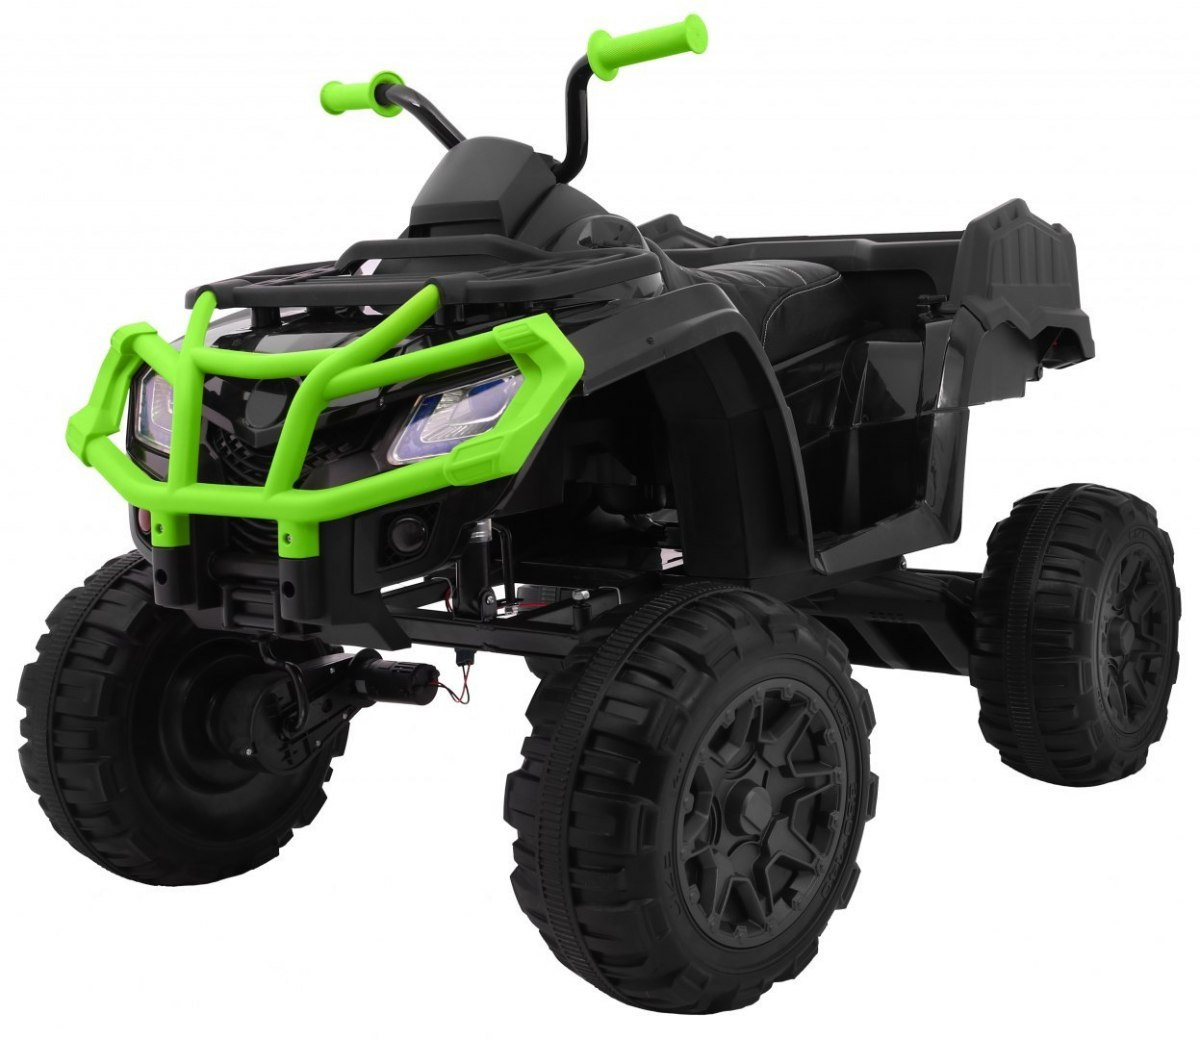 mamido Detská elektrická štvorkolka ATV XL s ovládačom zelená